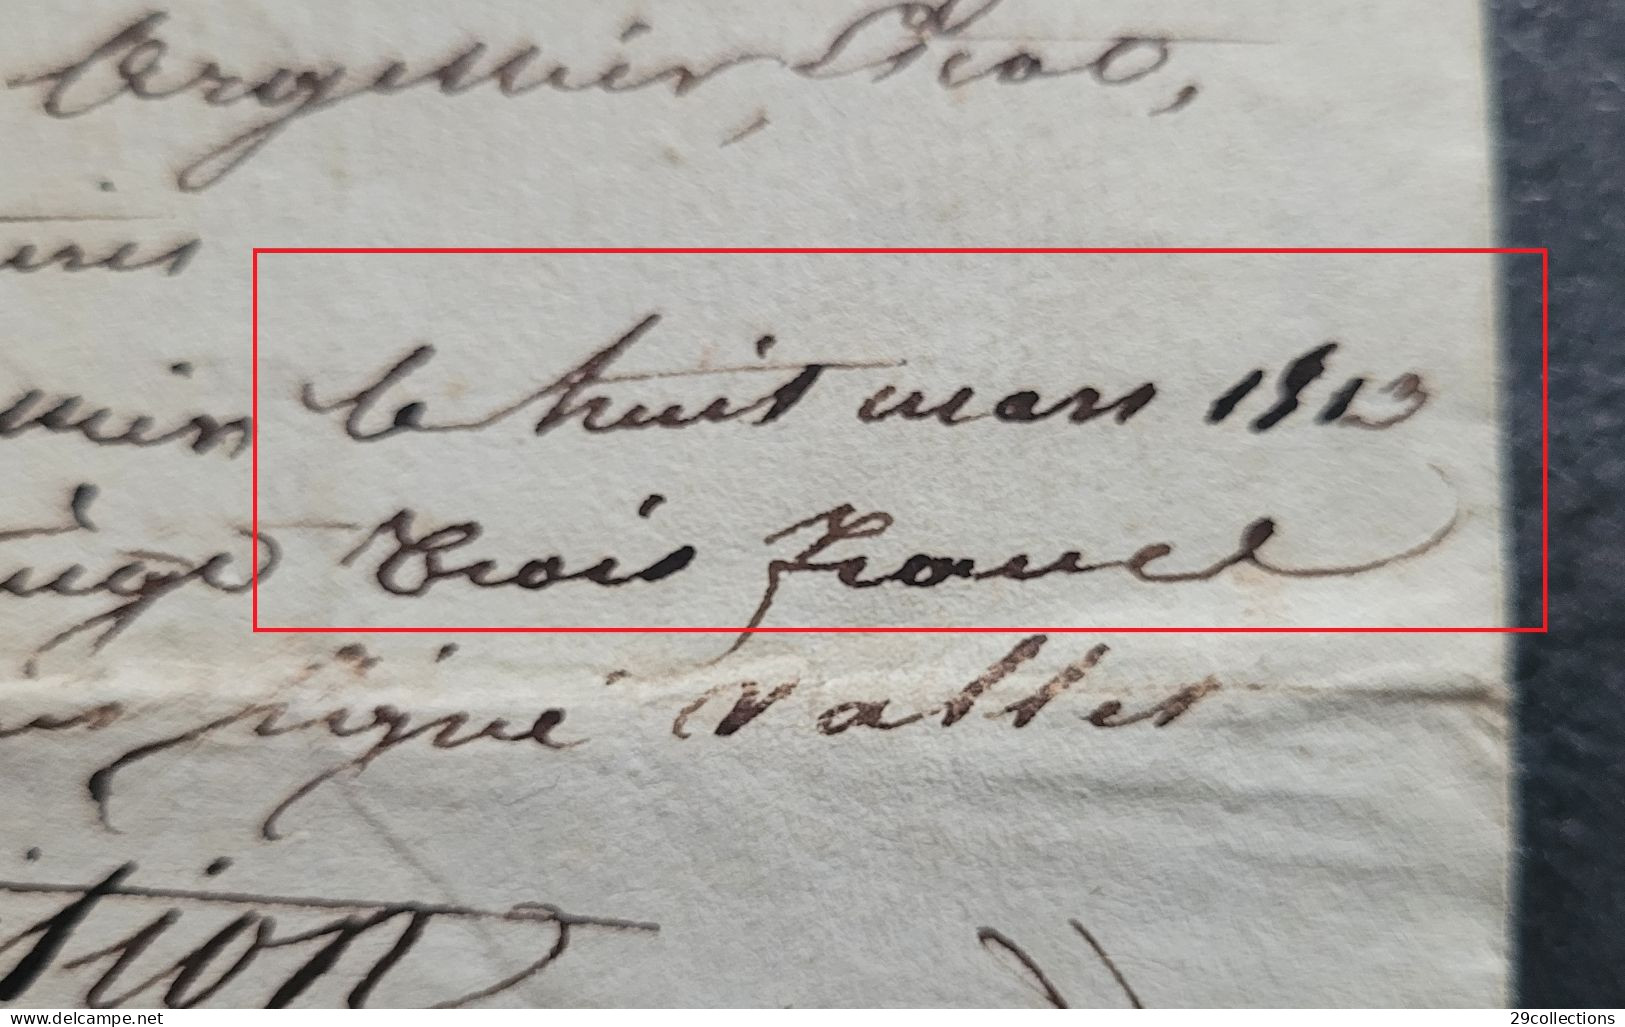 Acte 1813 mariage avec mention manuscrite rare "Pour Expédition" (par la Poste)